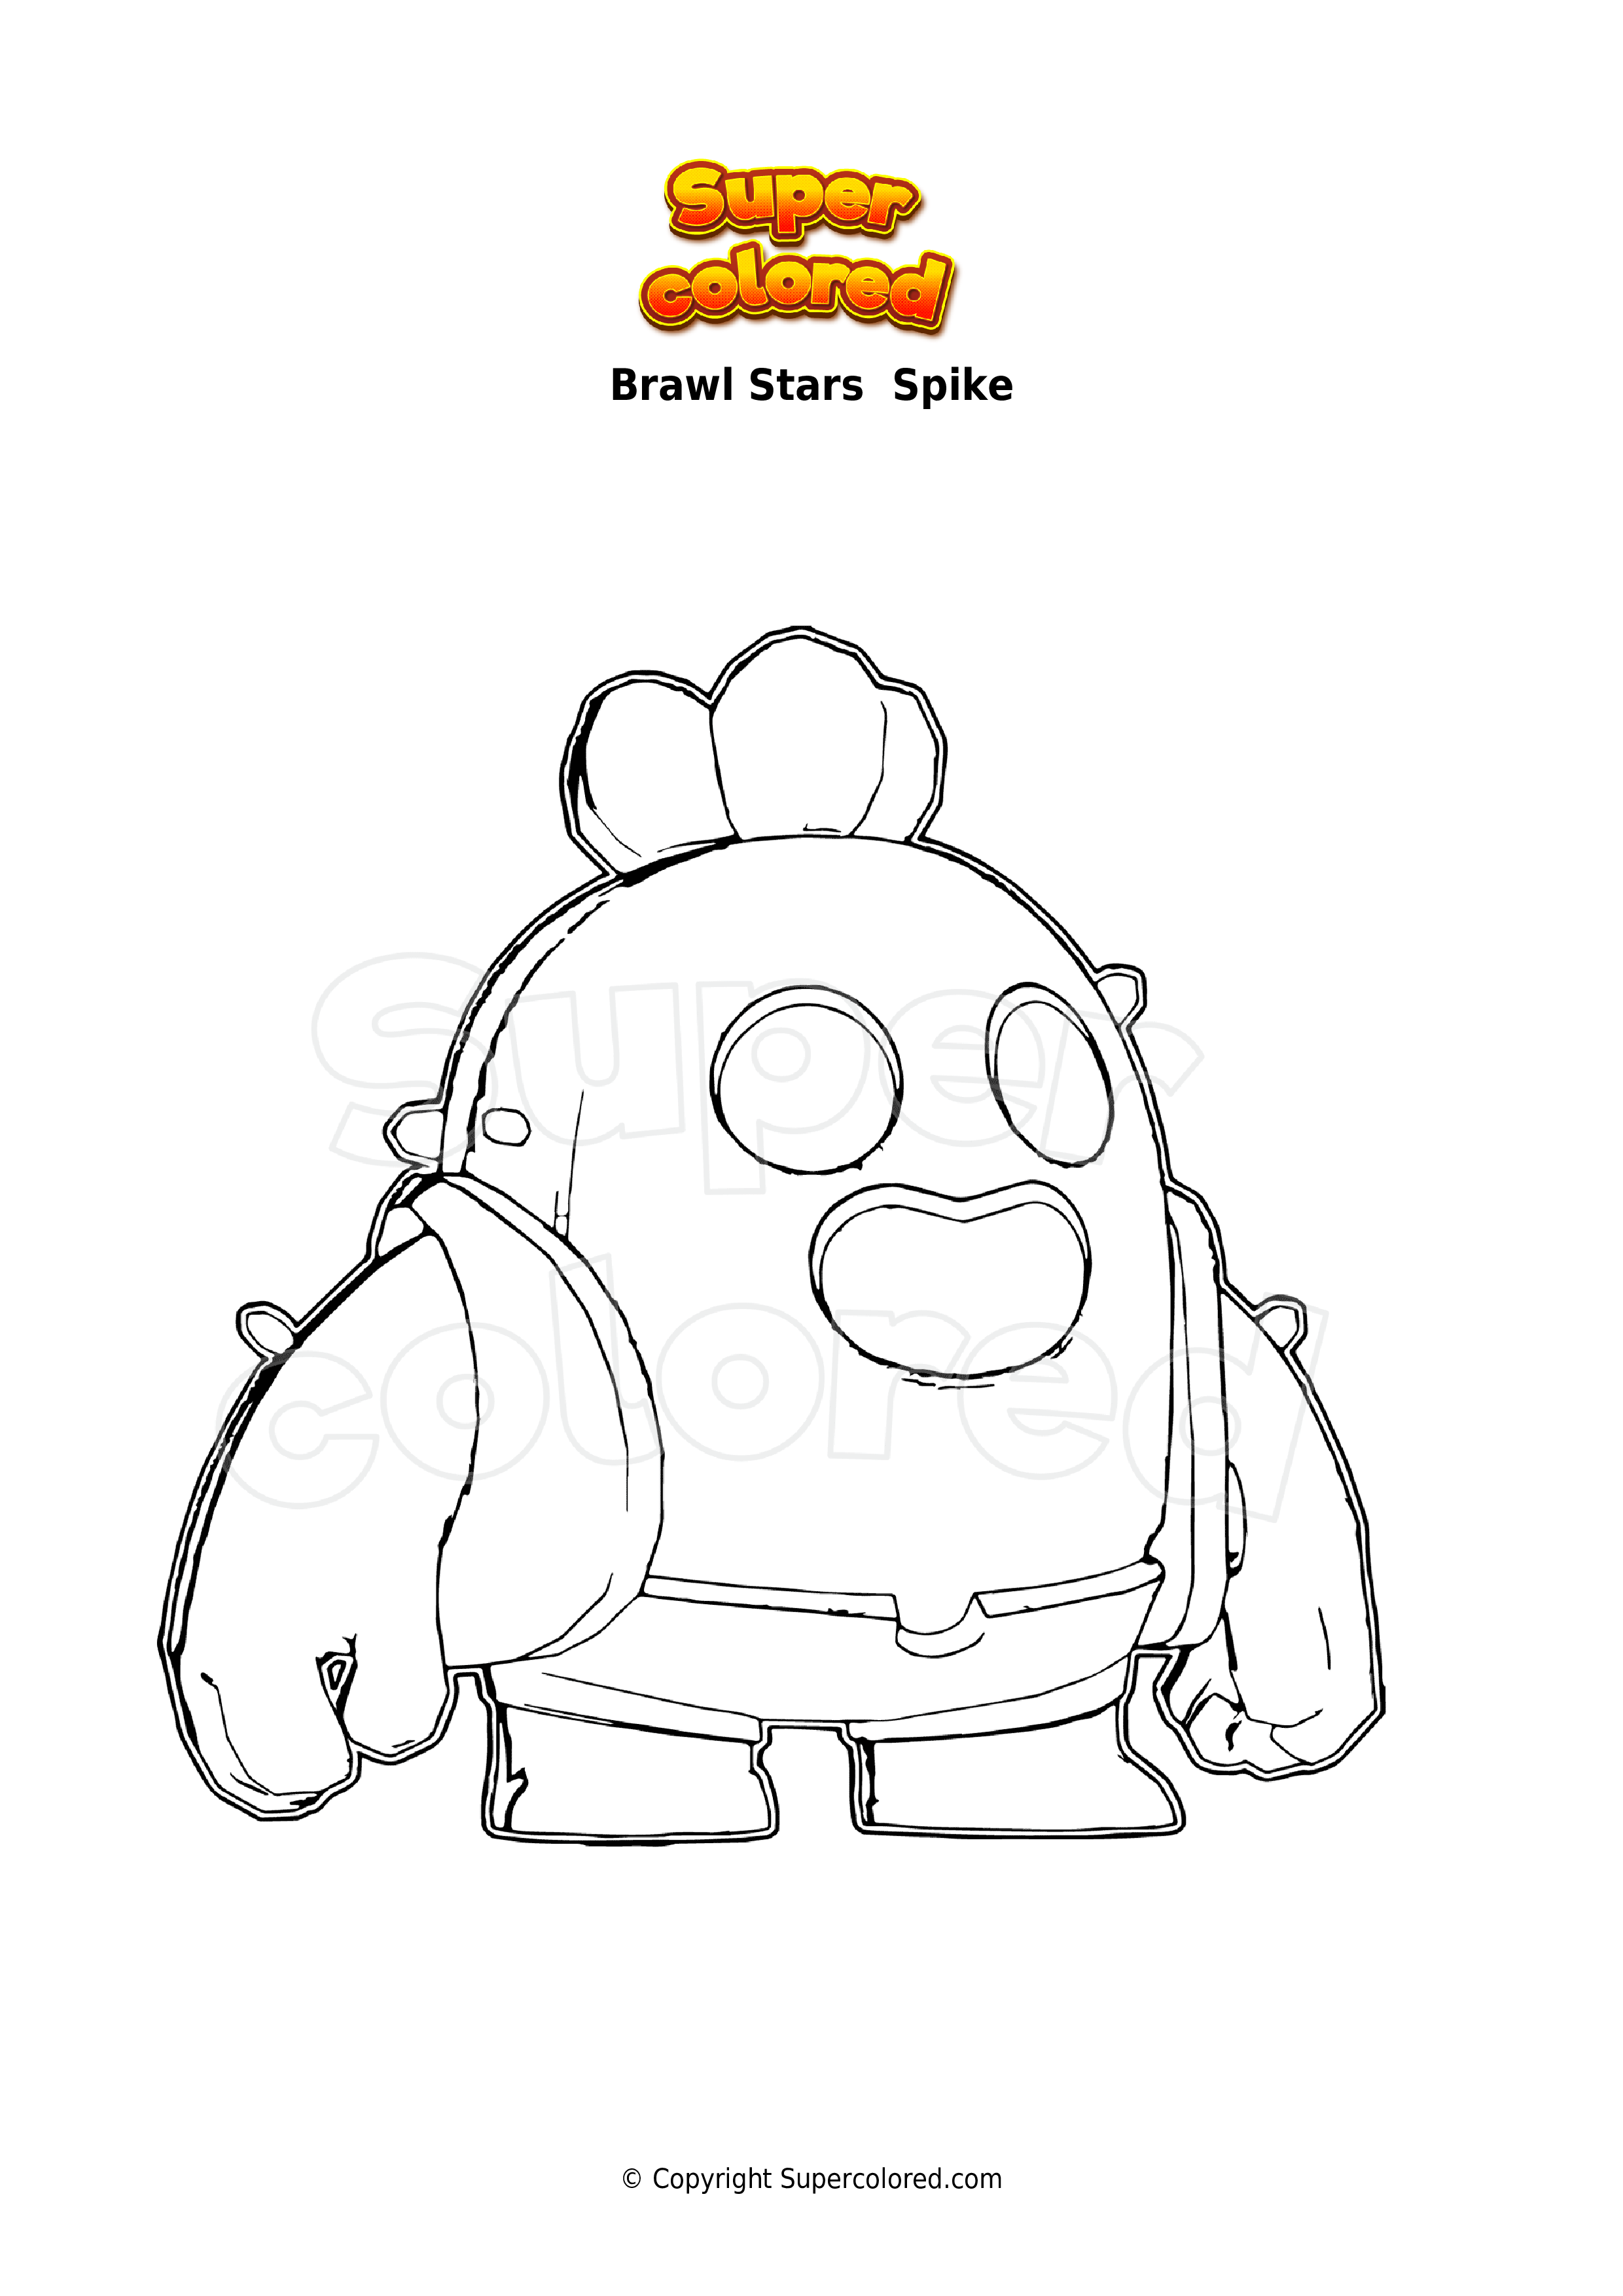 How to draw Brawl Stars Spike  Brawl Stars Spike drawing 